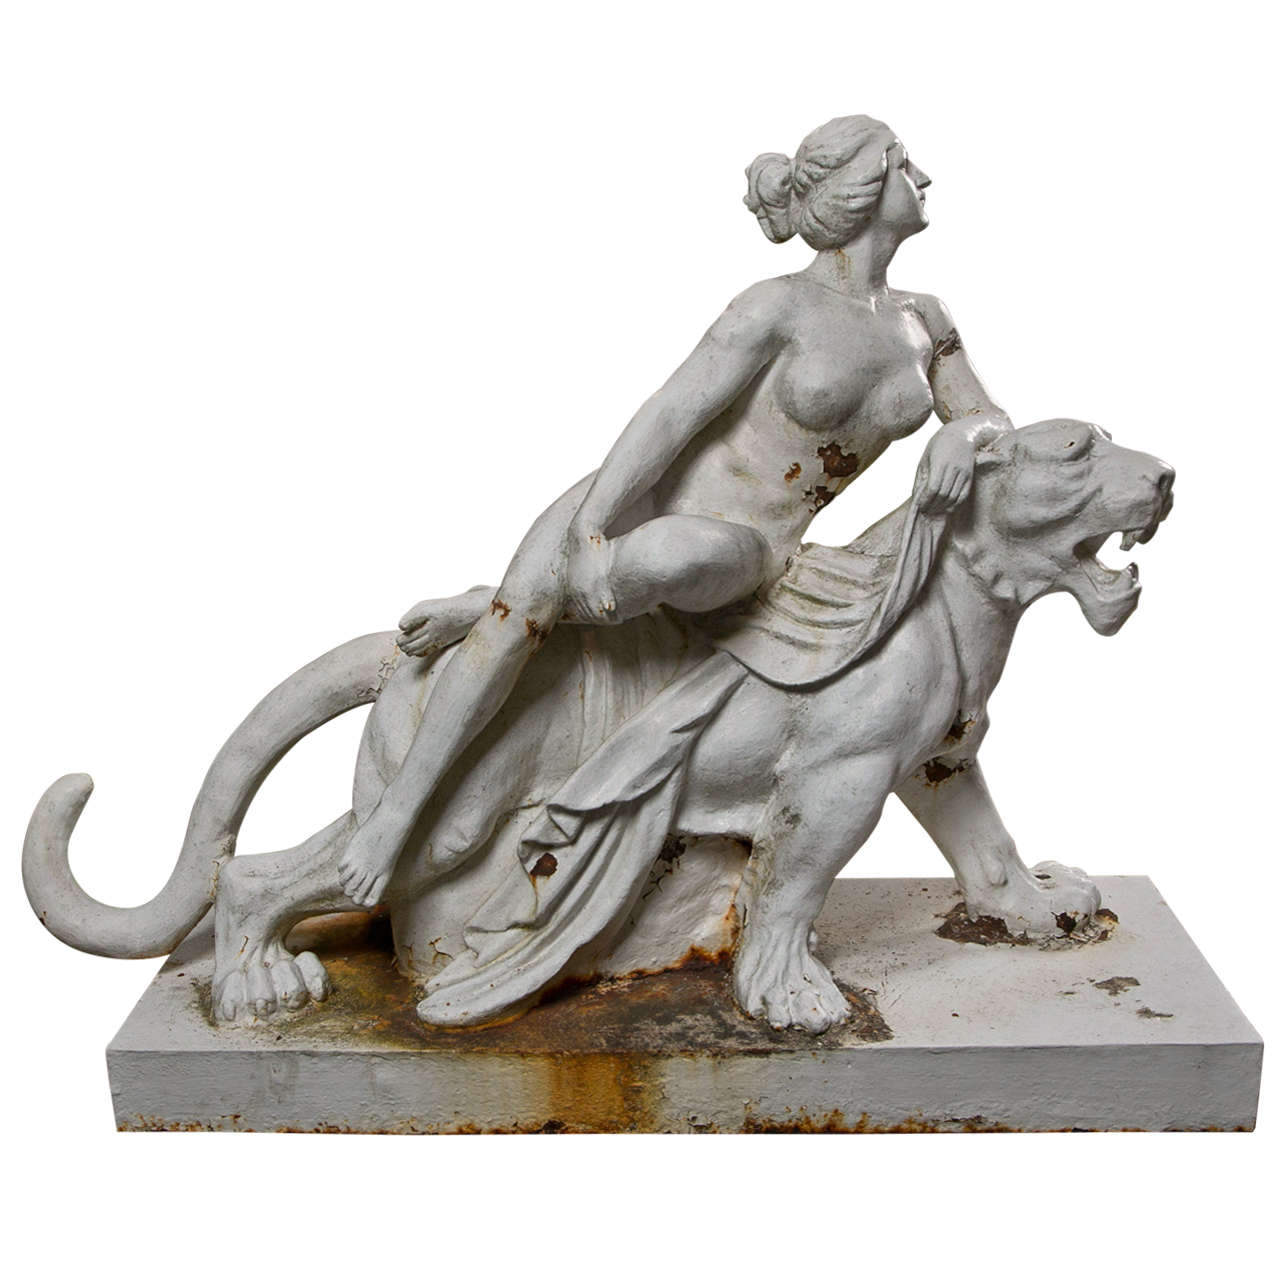 Gusseisenfigur des Ariadnes auf der Rückseite eines Panthers